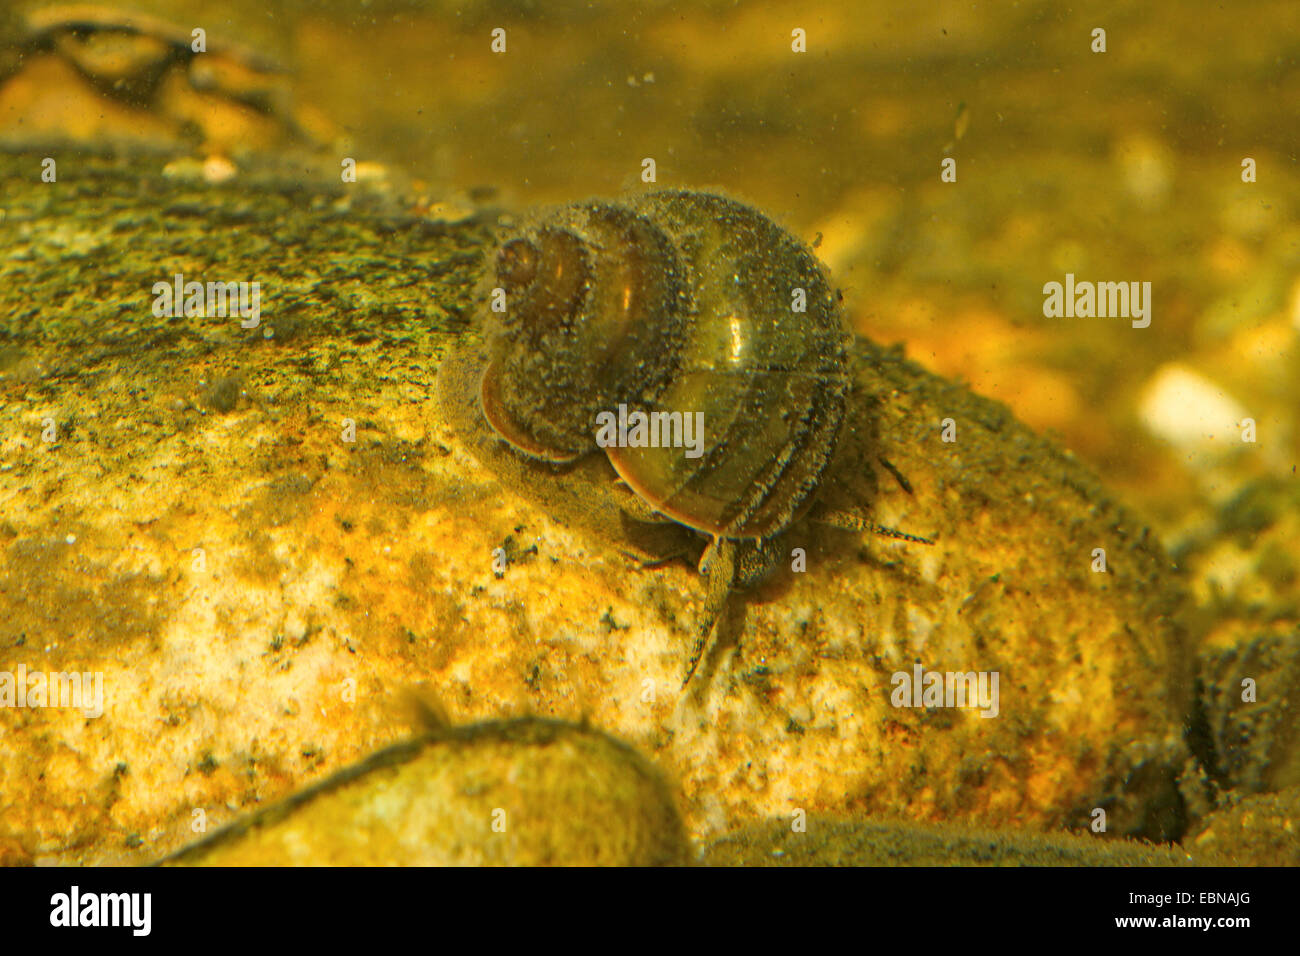 Río caracoles (Viviparus spec.), alimentándose de algas de una piedra Foto de stock